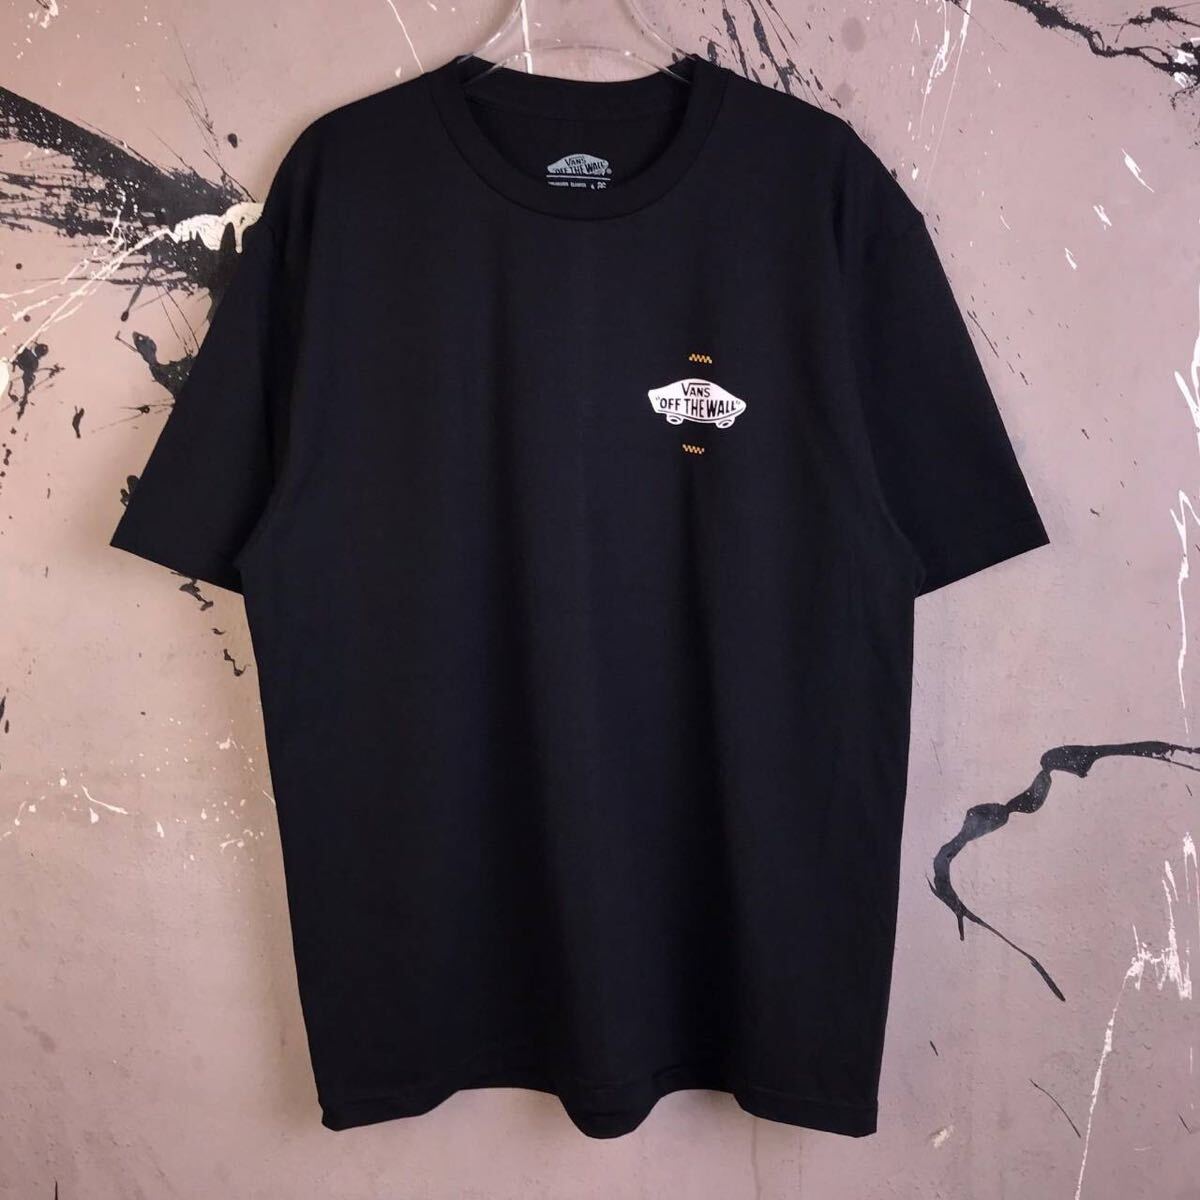 Tシャツ 半袖 バンズ VANS ストリート系 ロサンゼルス スケボー スケードボード カリフォルニア 黒 XLサイズ_画像2